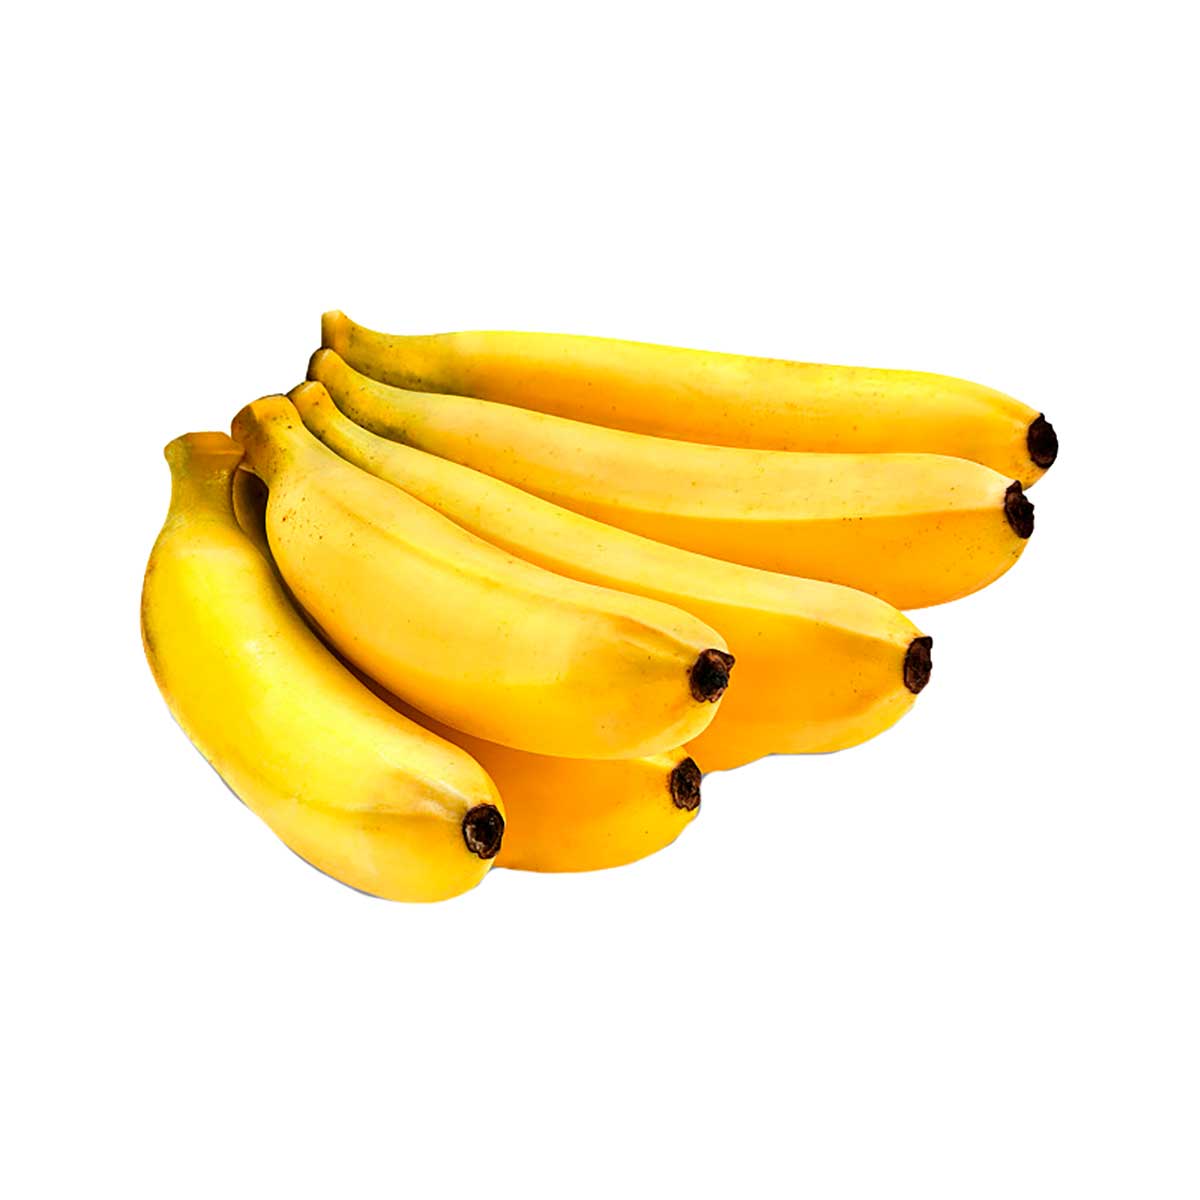 banana-prata-sabor-e-qualidade-300-g-1.jpg